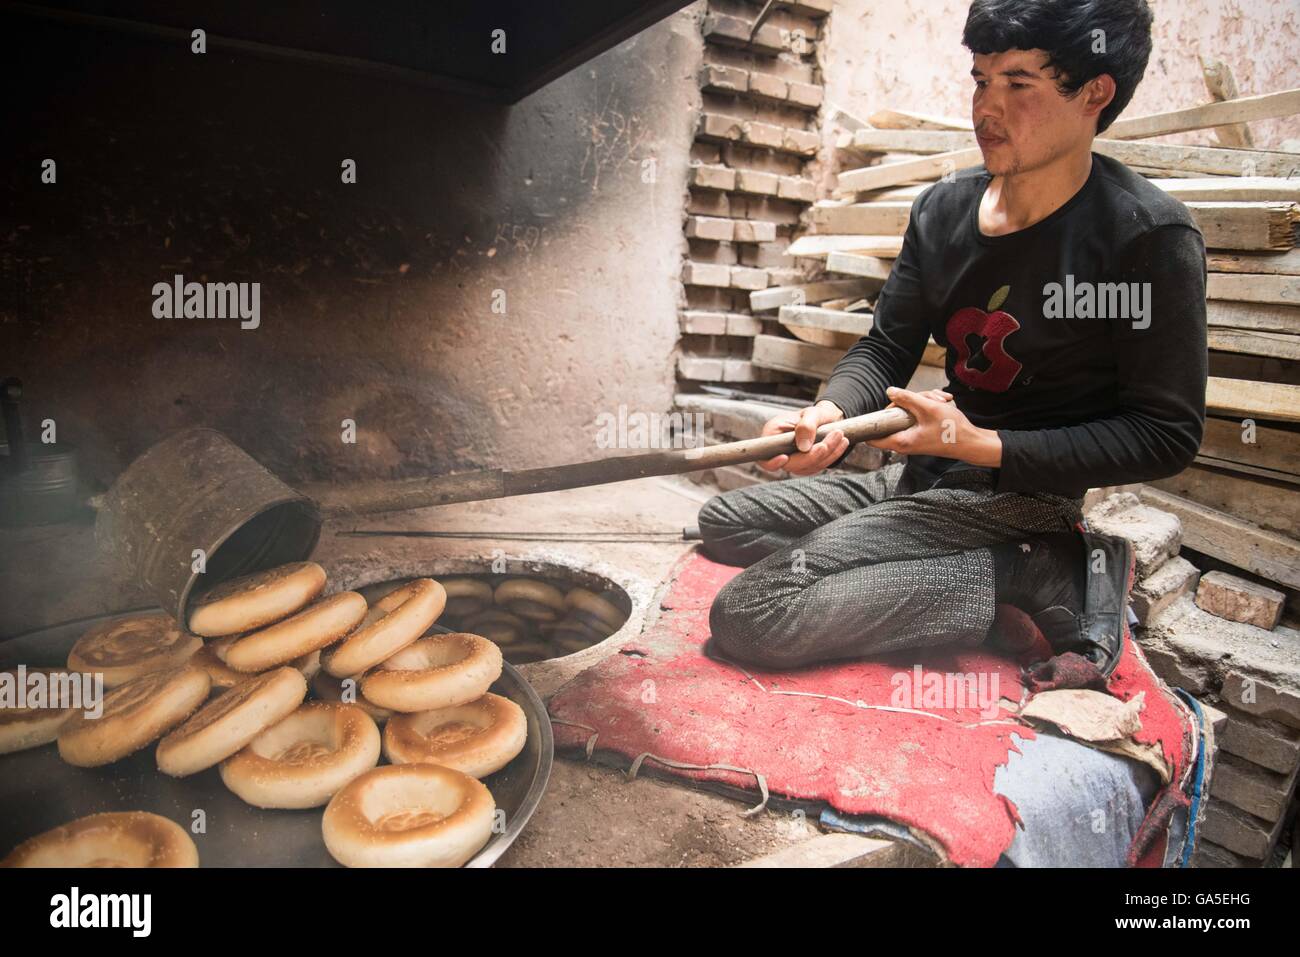 Kashgar, la Région Autonome Uygur du Xinjiang. 28 Juin, 2016. Un homme prend des nang, une sorte de crêpe croustillante, aliment de base de la population de Kashgar, d'un four en brique chauffé à Kashgar, dans la région autonome Uygur du Xinjiang, le 28 juin 2016. Les boulangers ont passé plus de 16 heures faire autour de quatre ou cinq mille nangs pour répondre aux besoins que la rupture s'approche rapidement. © Bu Duomen/Xinhua/Alamy Live News Banque D'Images